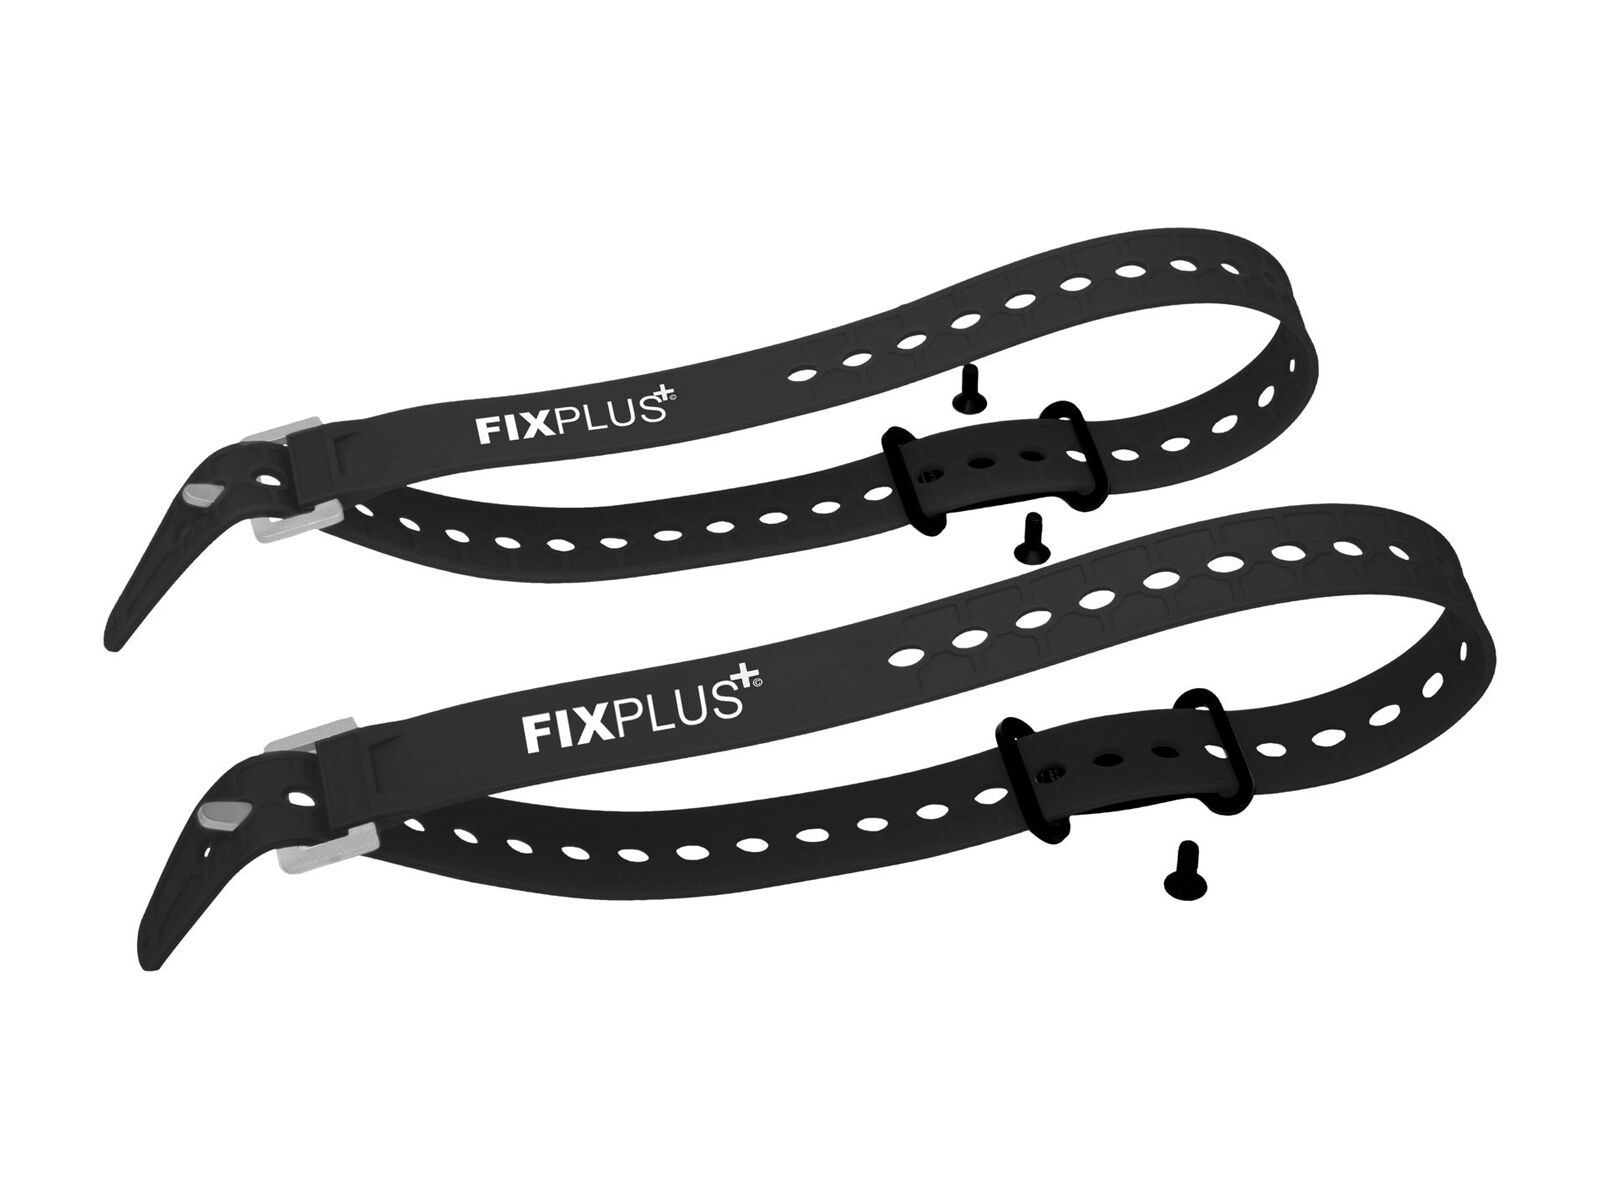 Fixplus Sachen-Festmacher inklusive Strap 66 cm - 2 Set Pack black/black 399FP